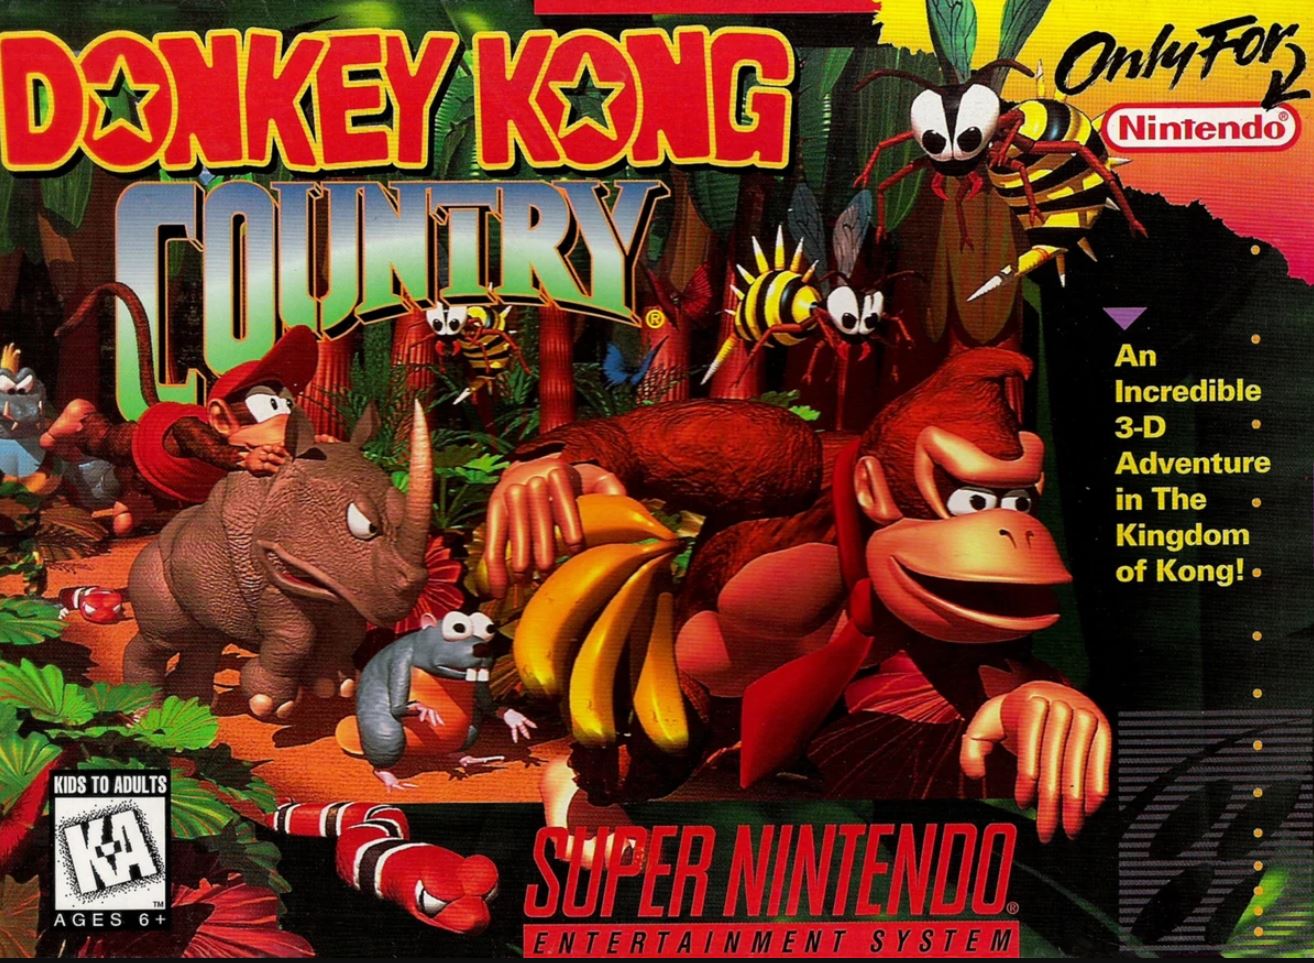 DKC Original cover Nintendo classic game